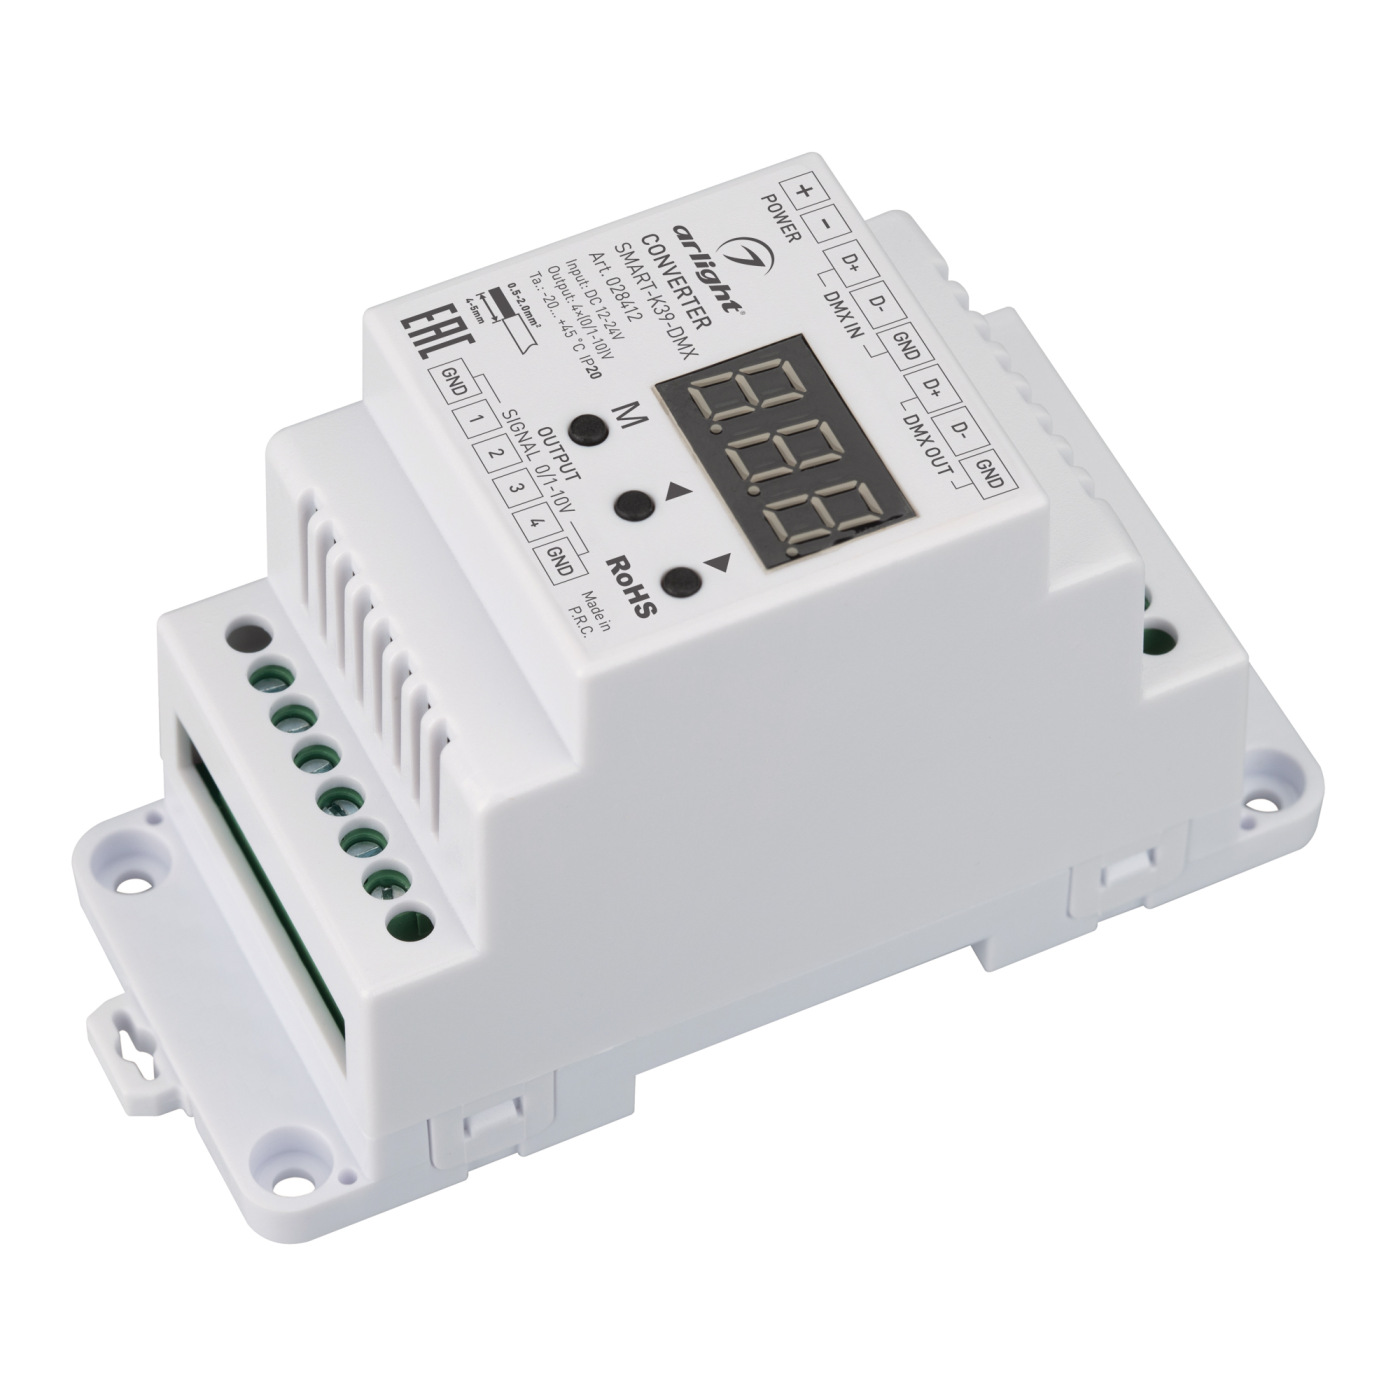 Конвертер SMART-K39-DMX (12-24V, 0/1-10V, DIN) (Arlight, Металл) усилитель питания es 3001 3 4 канала